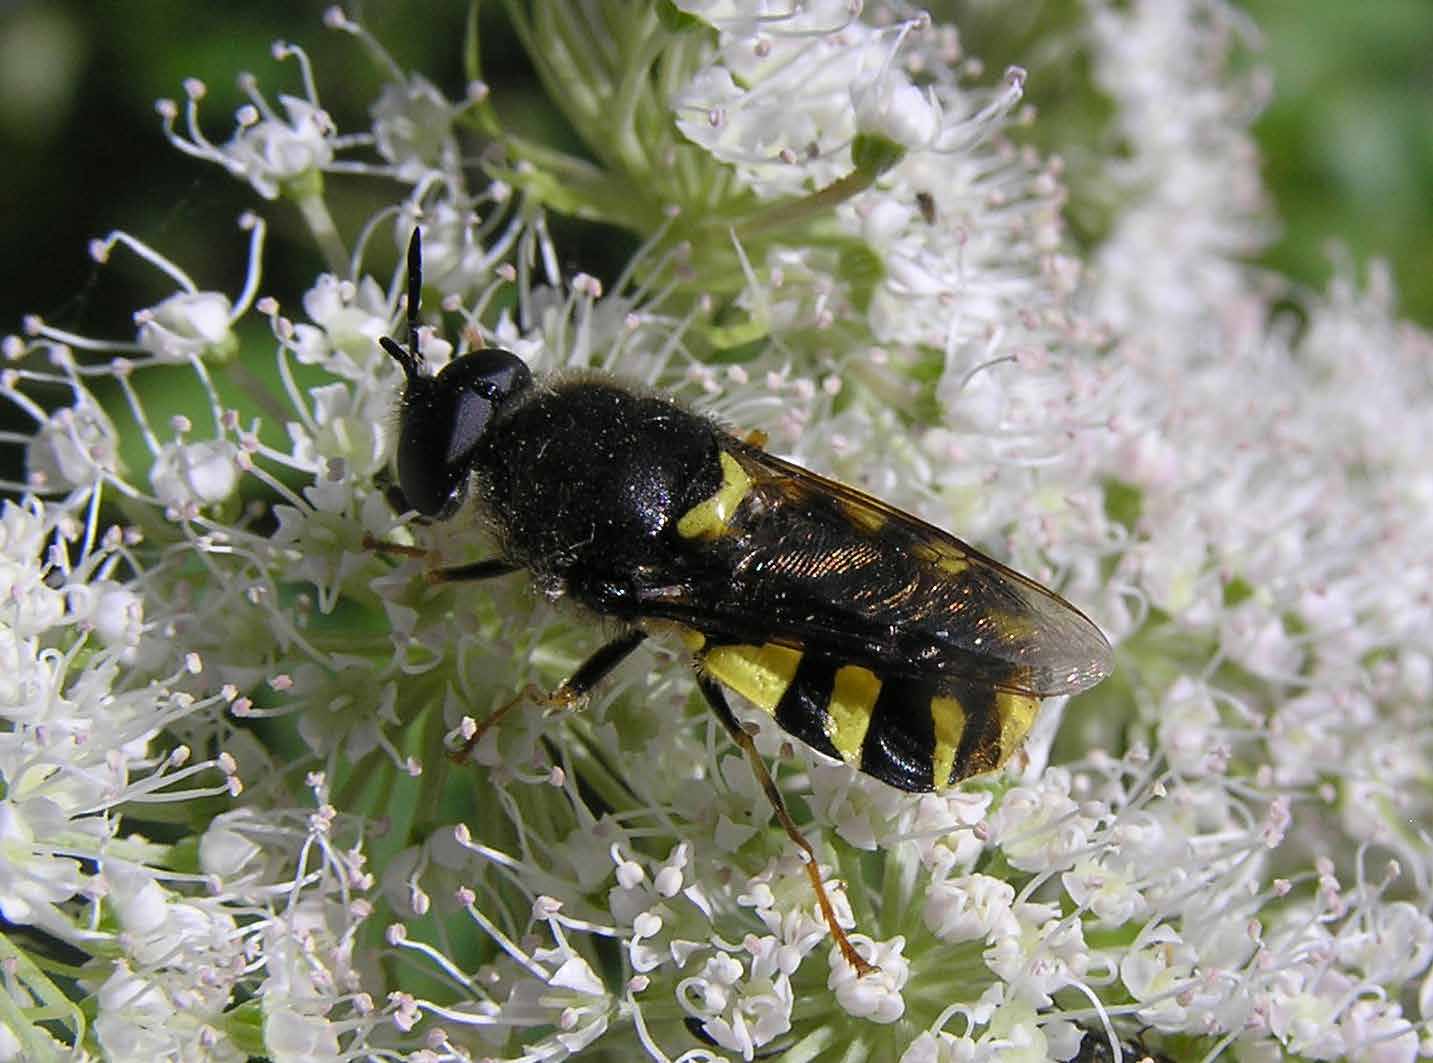 29 blomflugor varav flera hör till de så kallade slamflugorna som lever i grunda vegetationsrika miljöer och andas genom ett sifonrör som förs upp till vattenytan.